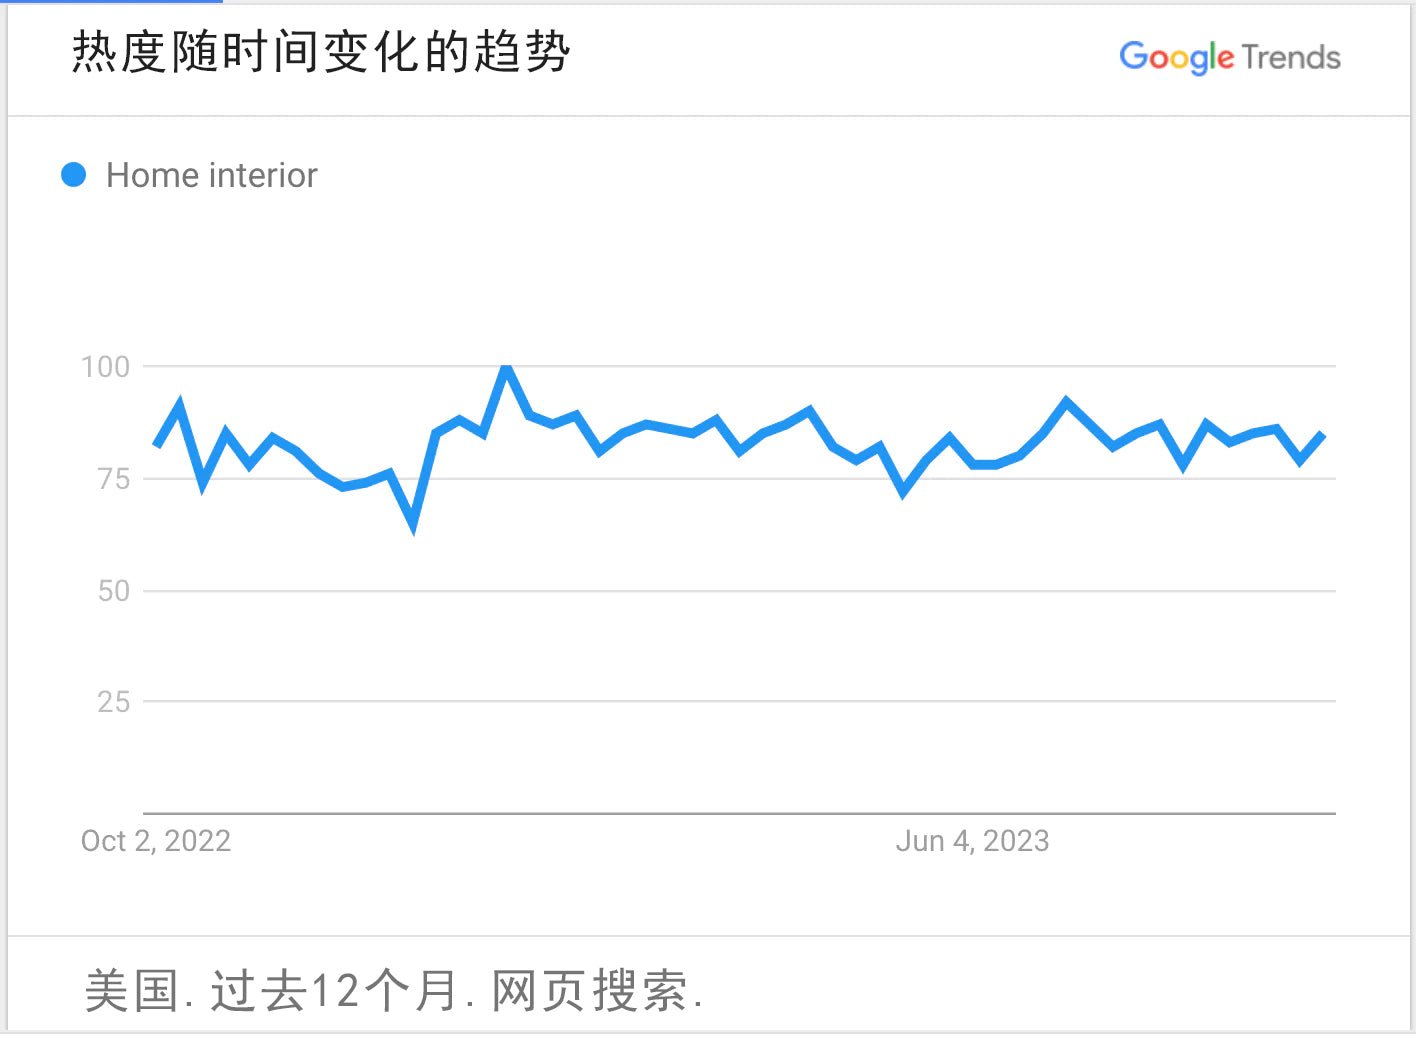 谷歌趋势图表曲线显示家居产品的搜索热度